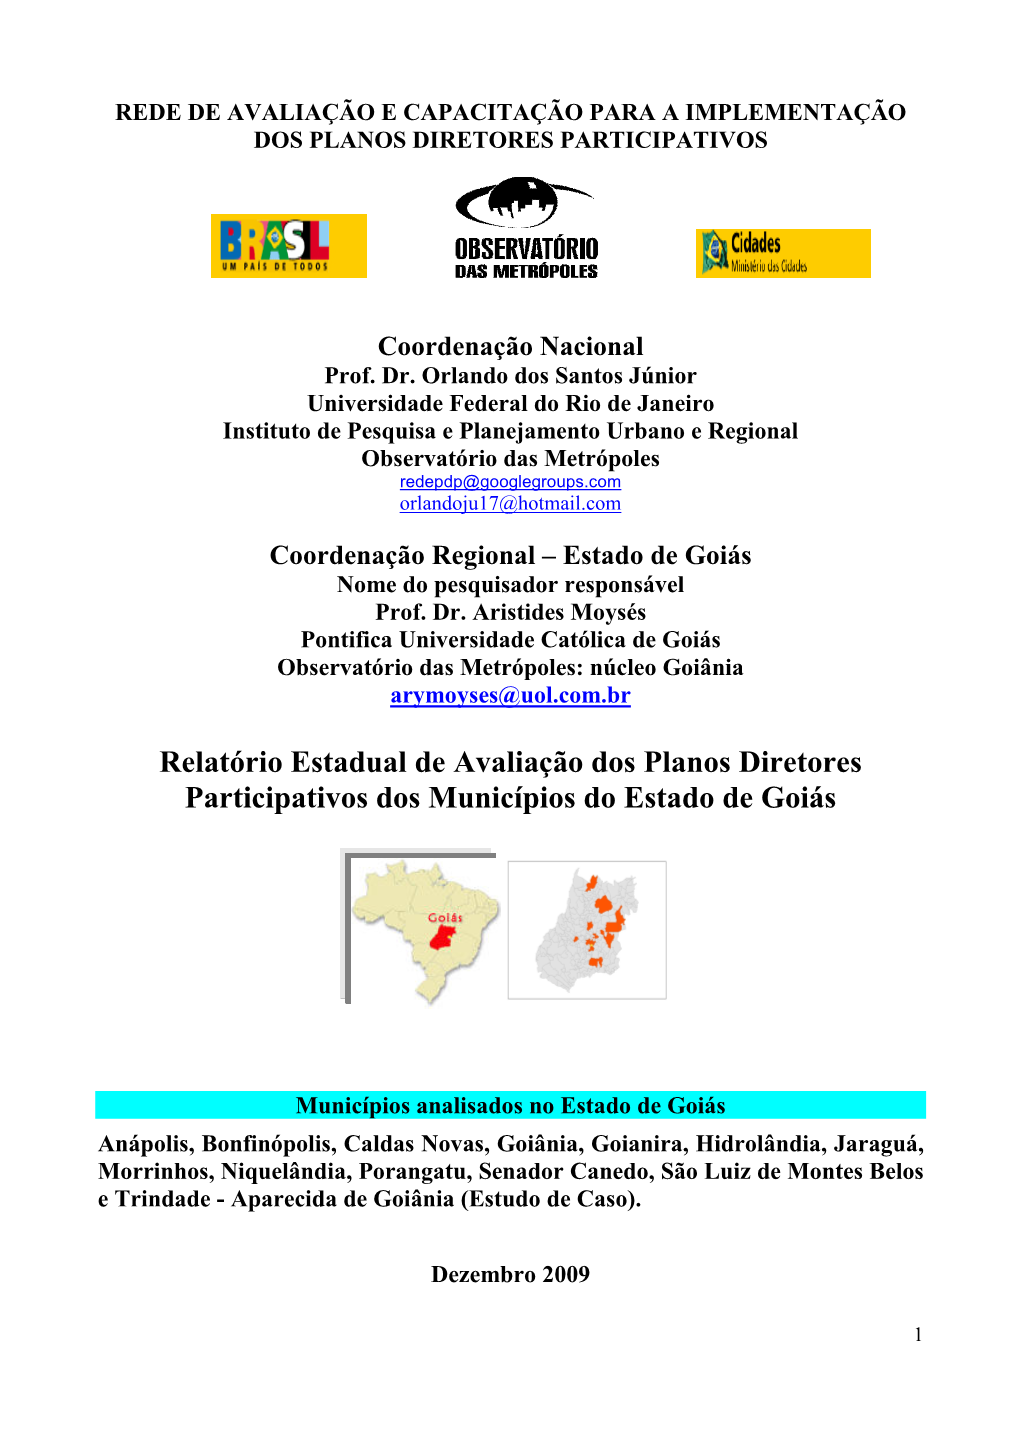 Relatório Estadual De Avaliação Dos Planos Diretores Participativos Dos Municípios Do Estado De Goiás